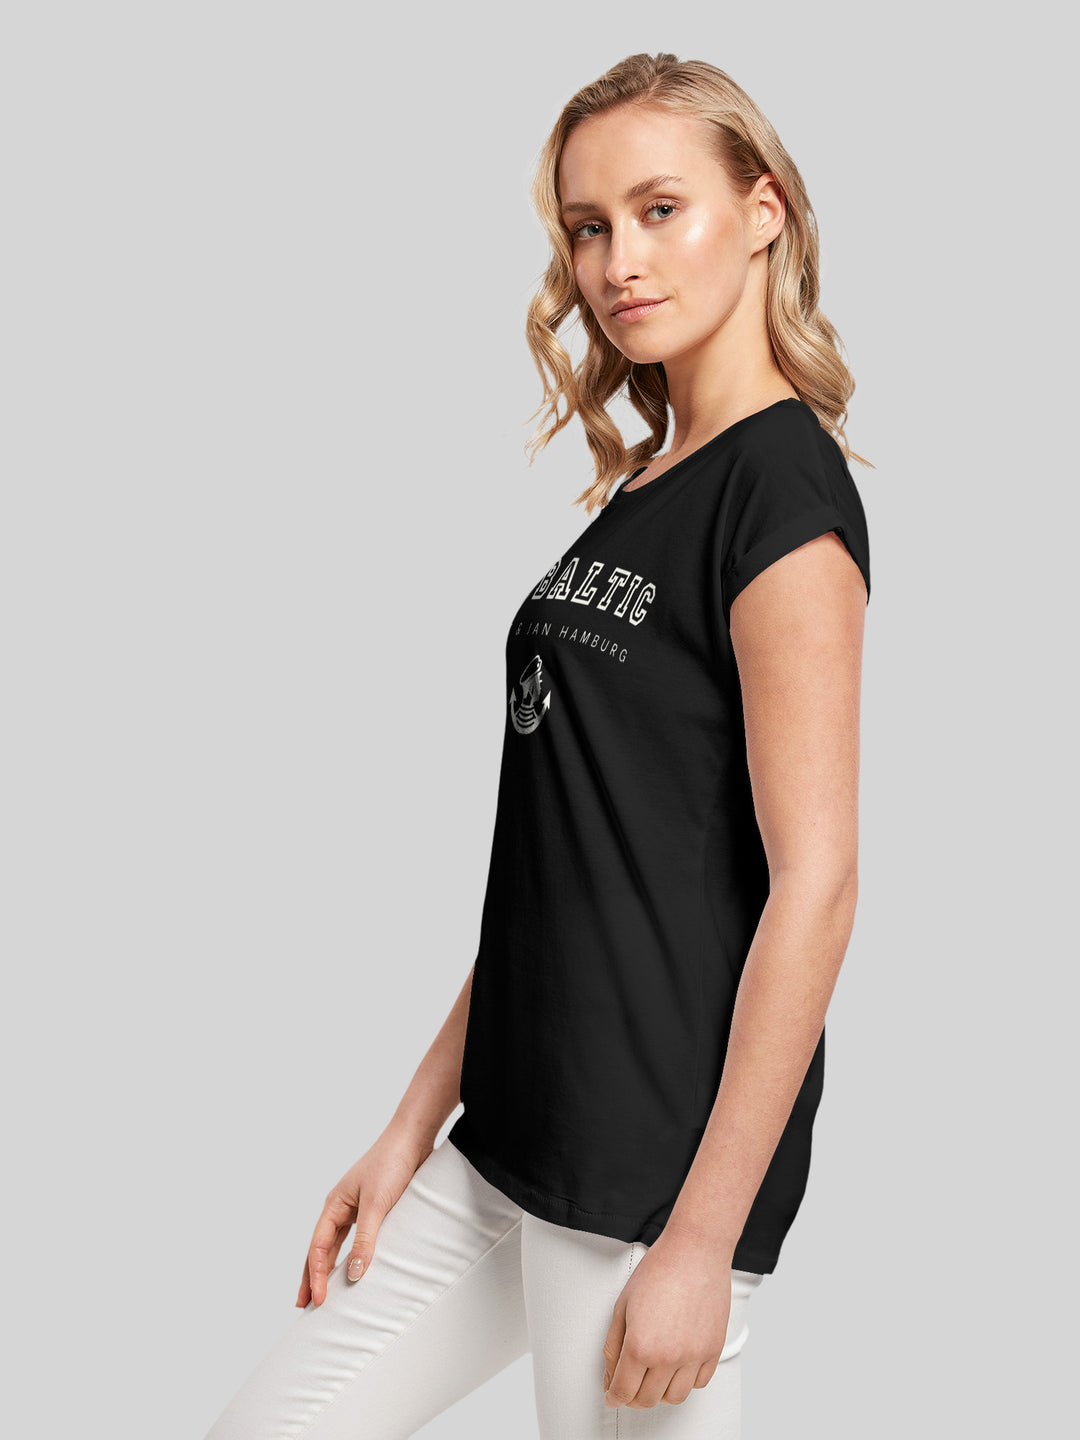 MALIN | T-Shirt Damen Go Baltic